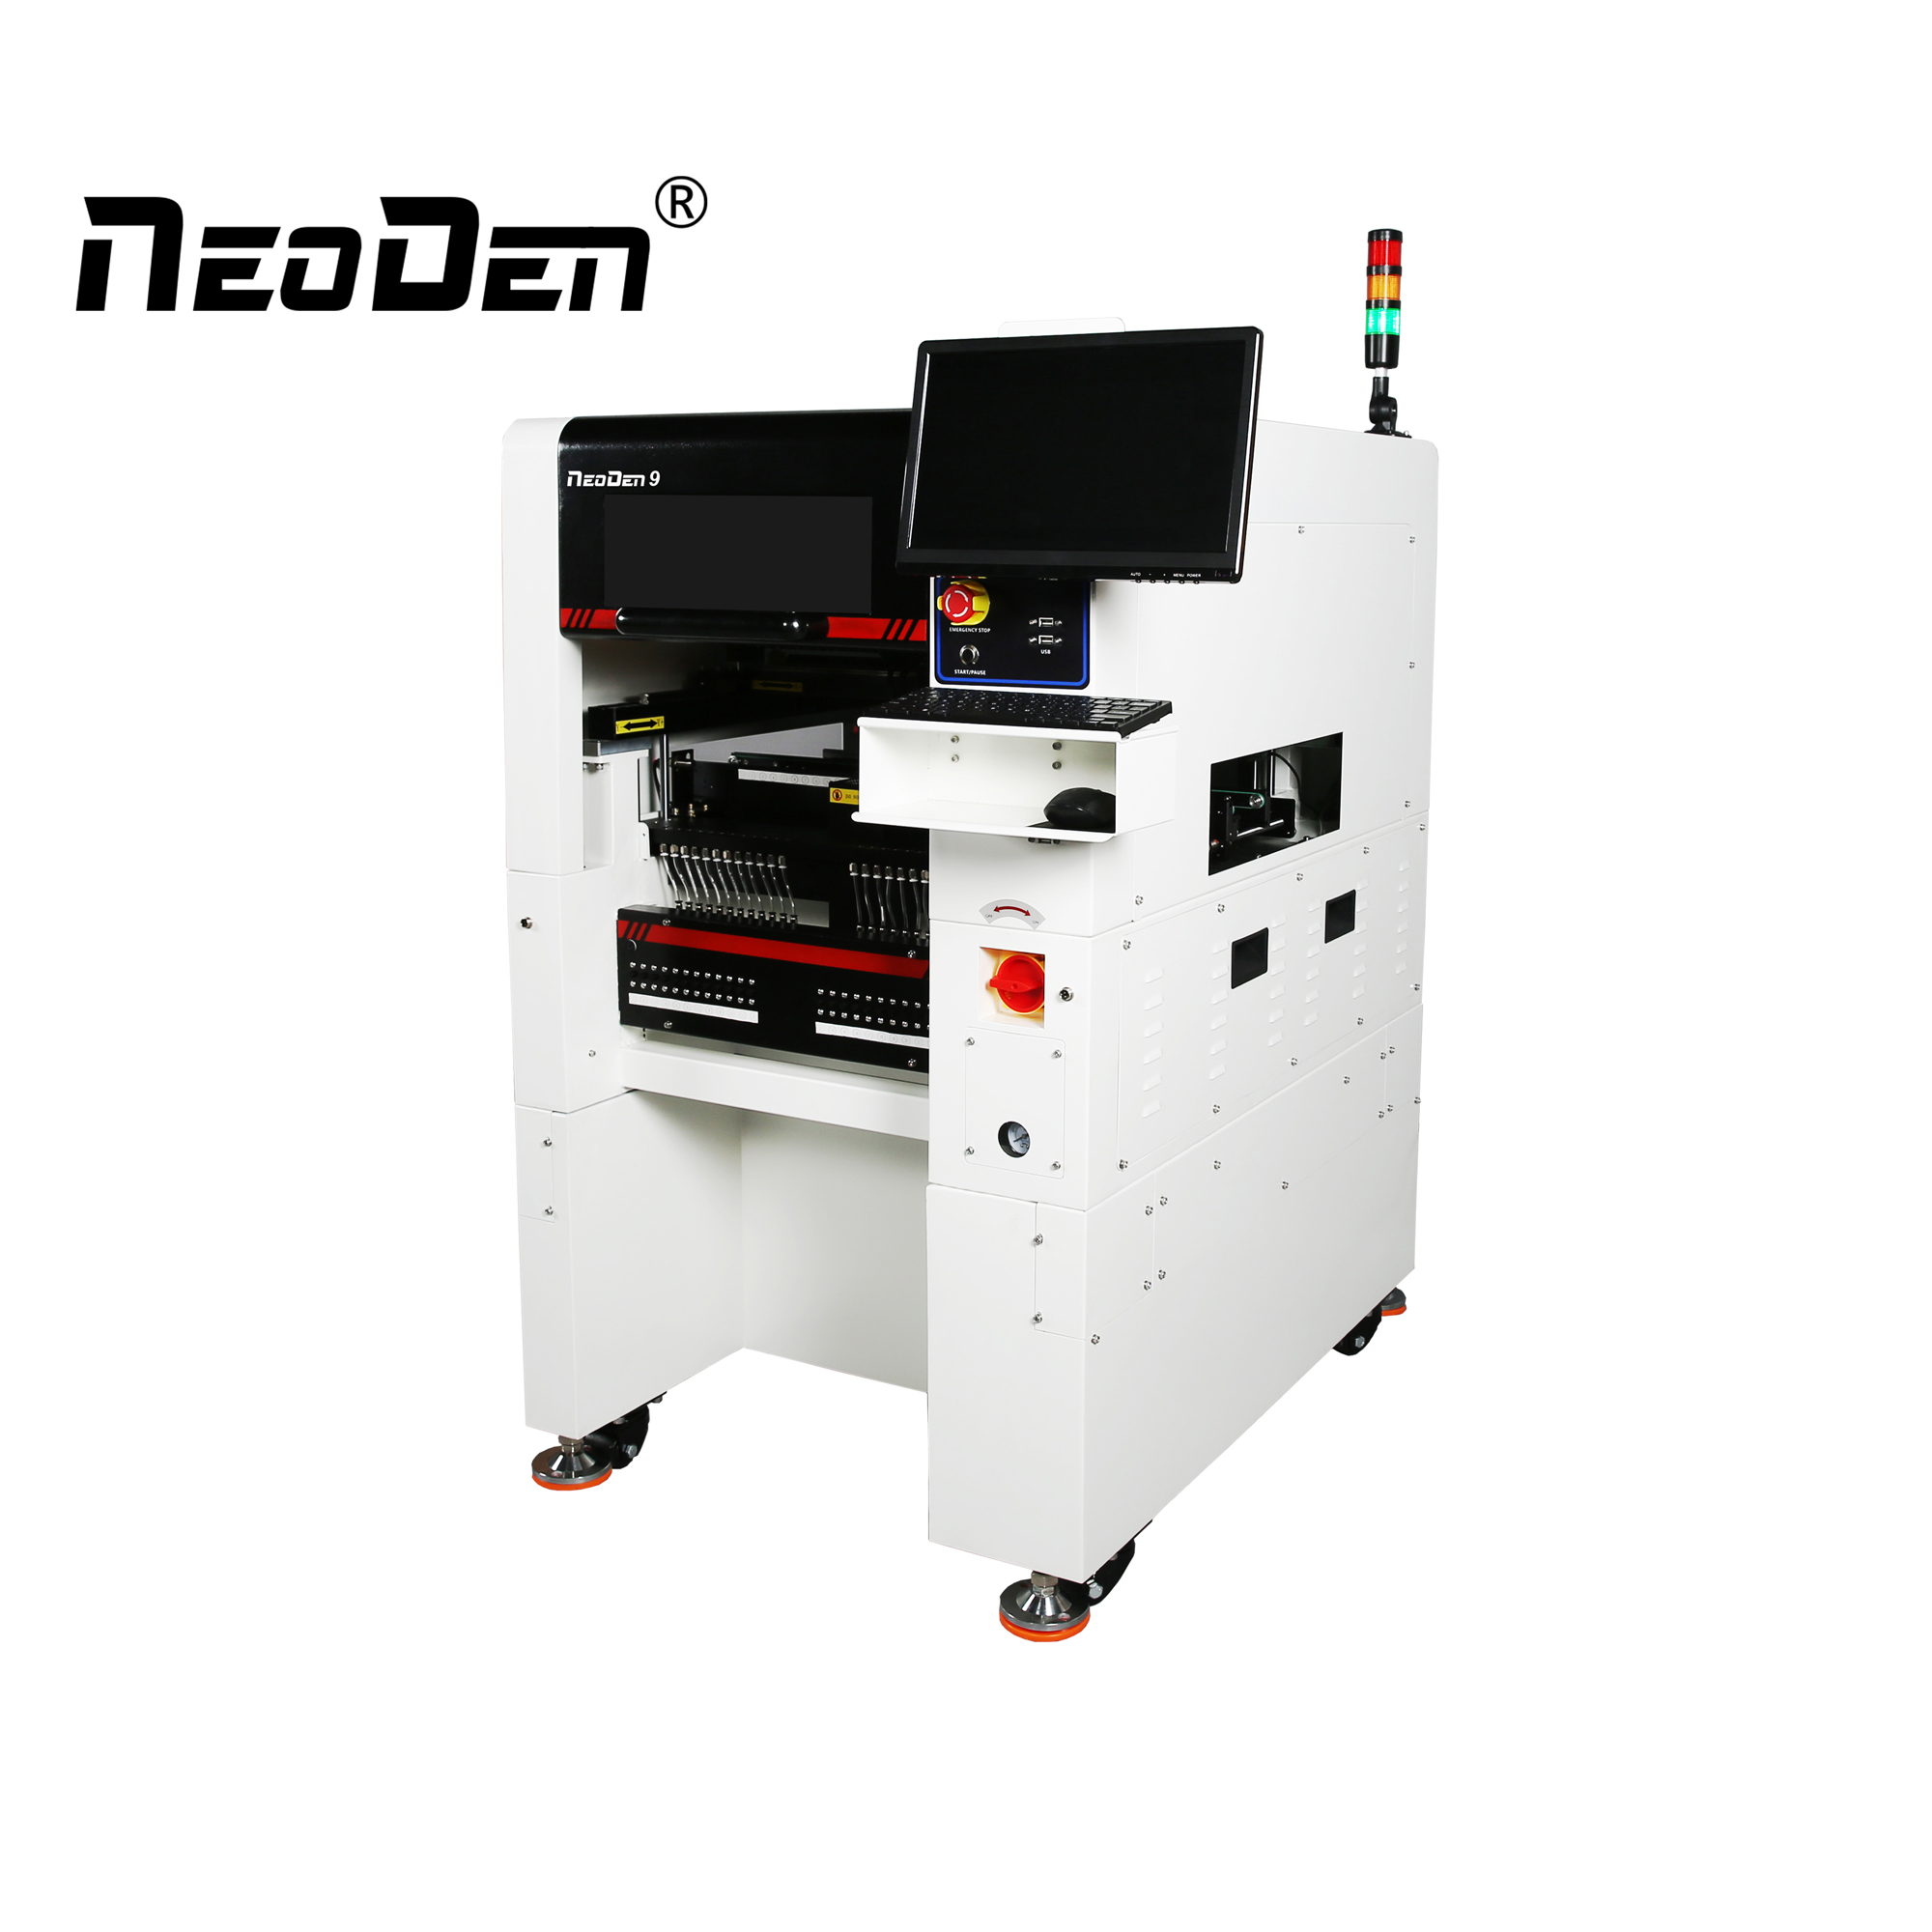 Καινουργιο ΠΡΟΪΟΝ!Διαλέξτε και τοποθετήστε το μηχάνημα NeoDen9 σε καυτές εκπτώσεις!